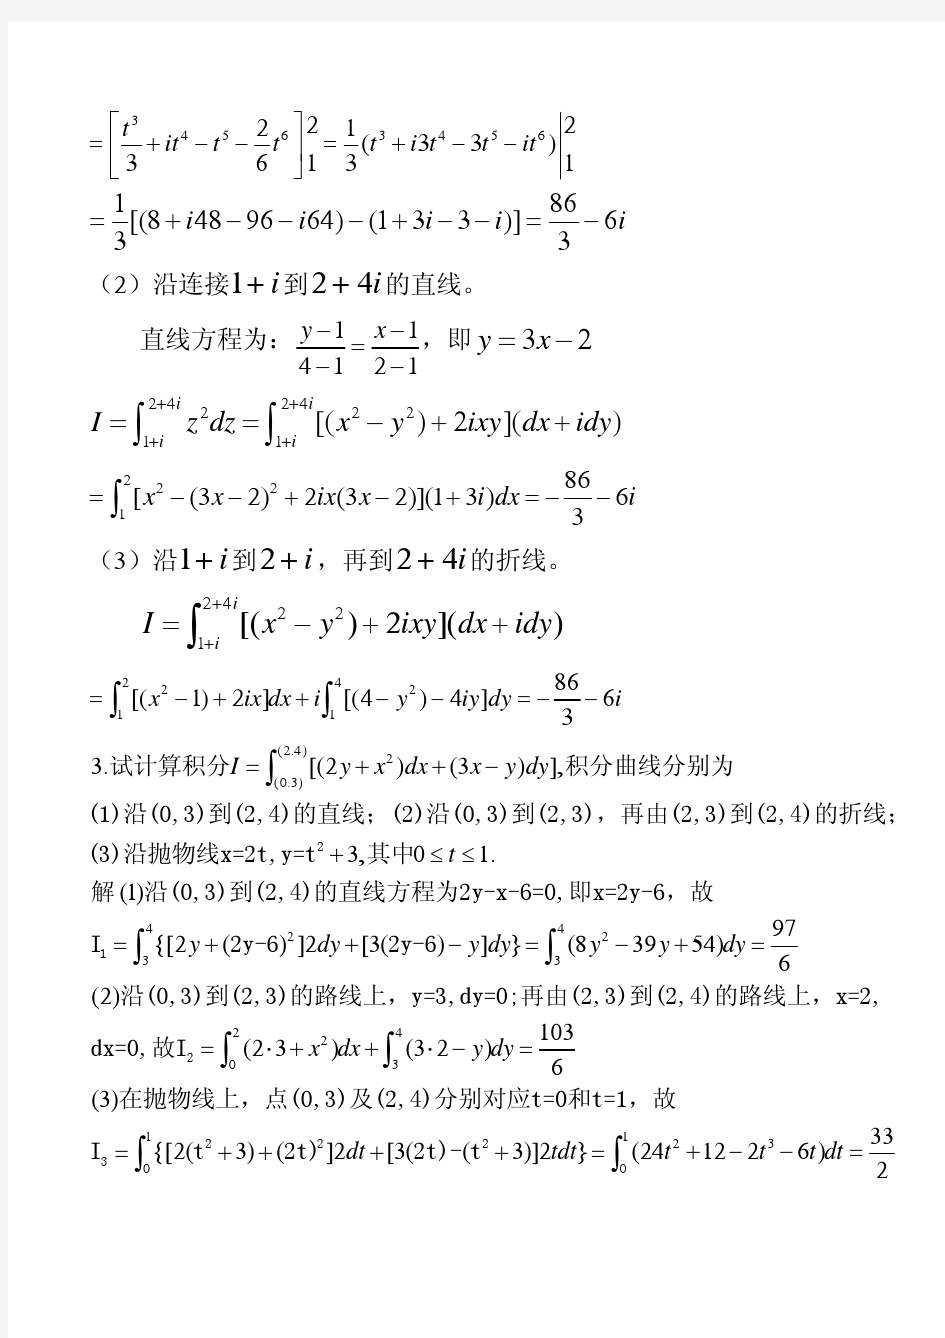 数学物理方法课后答案 (2)